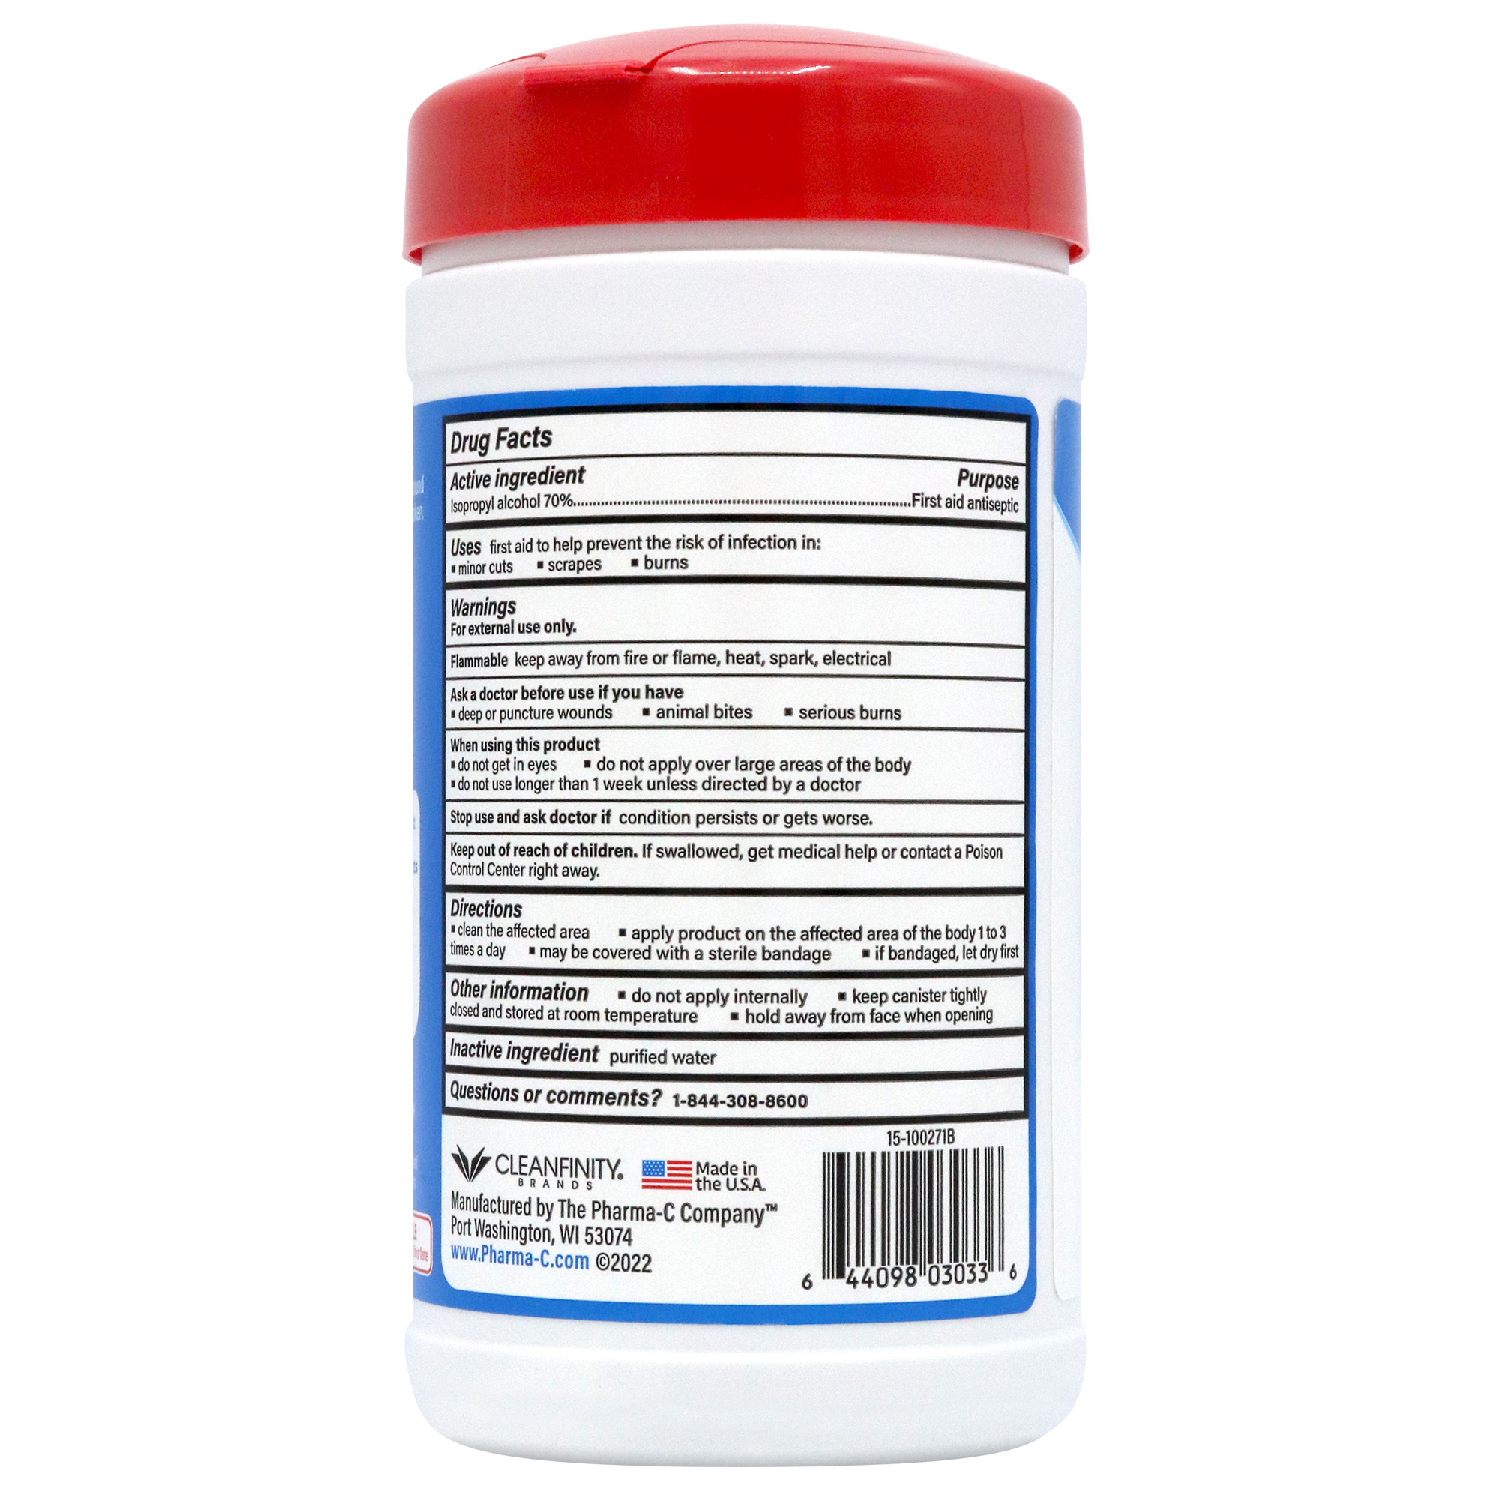 Pharma-C 70% Isopropyl Alcohol Wipes [40 wipes] - image 5 of 8